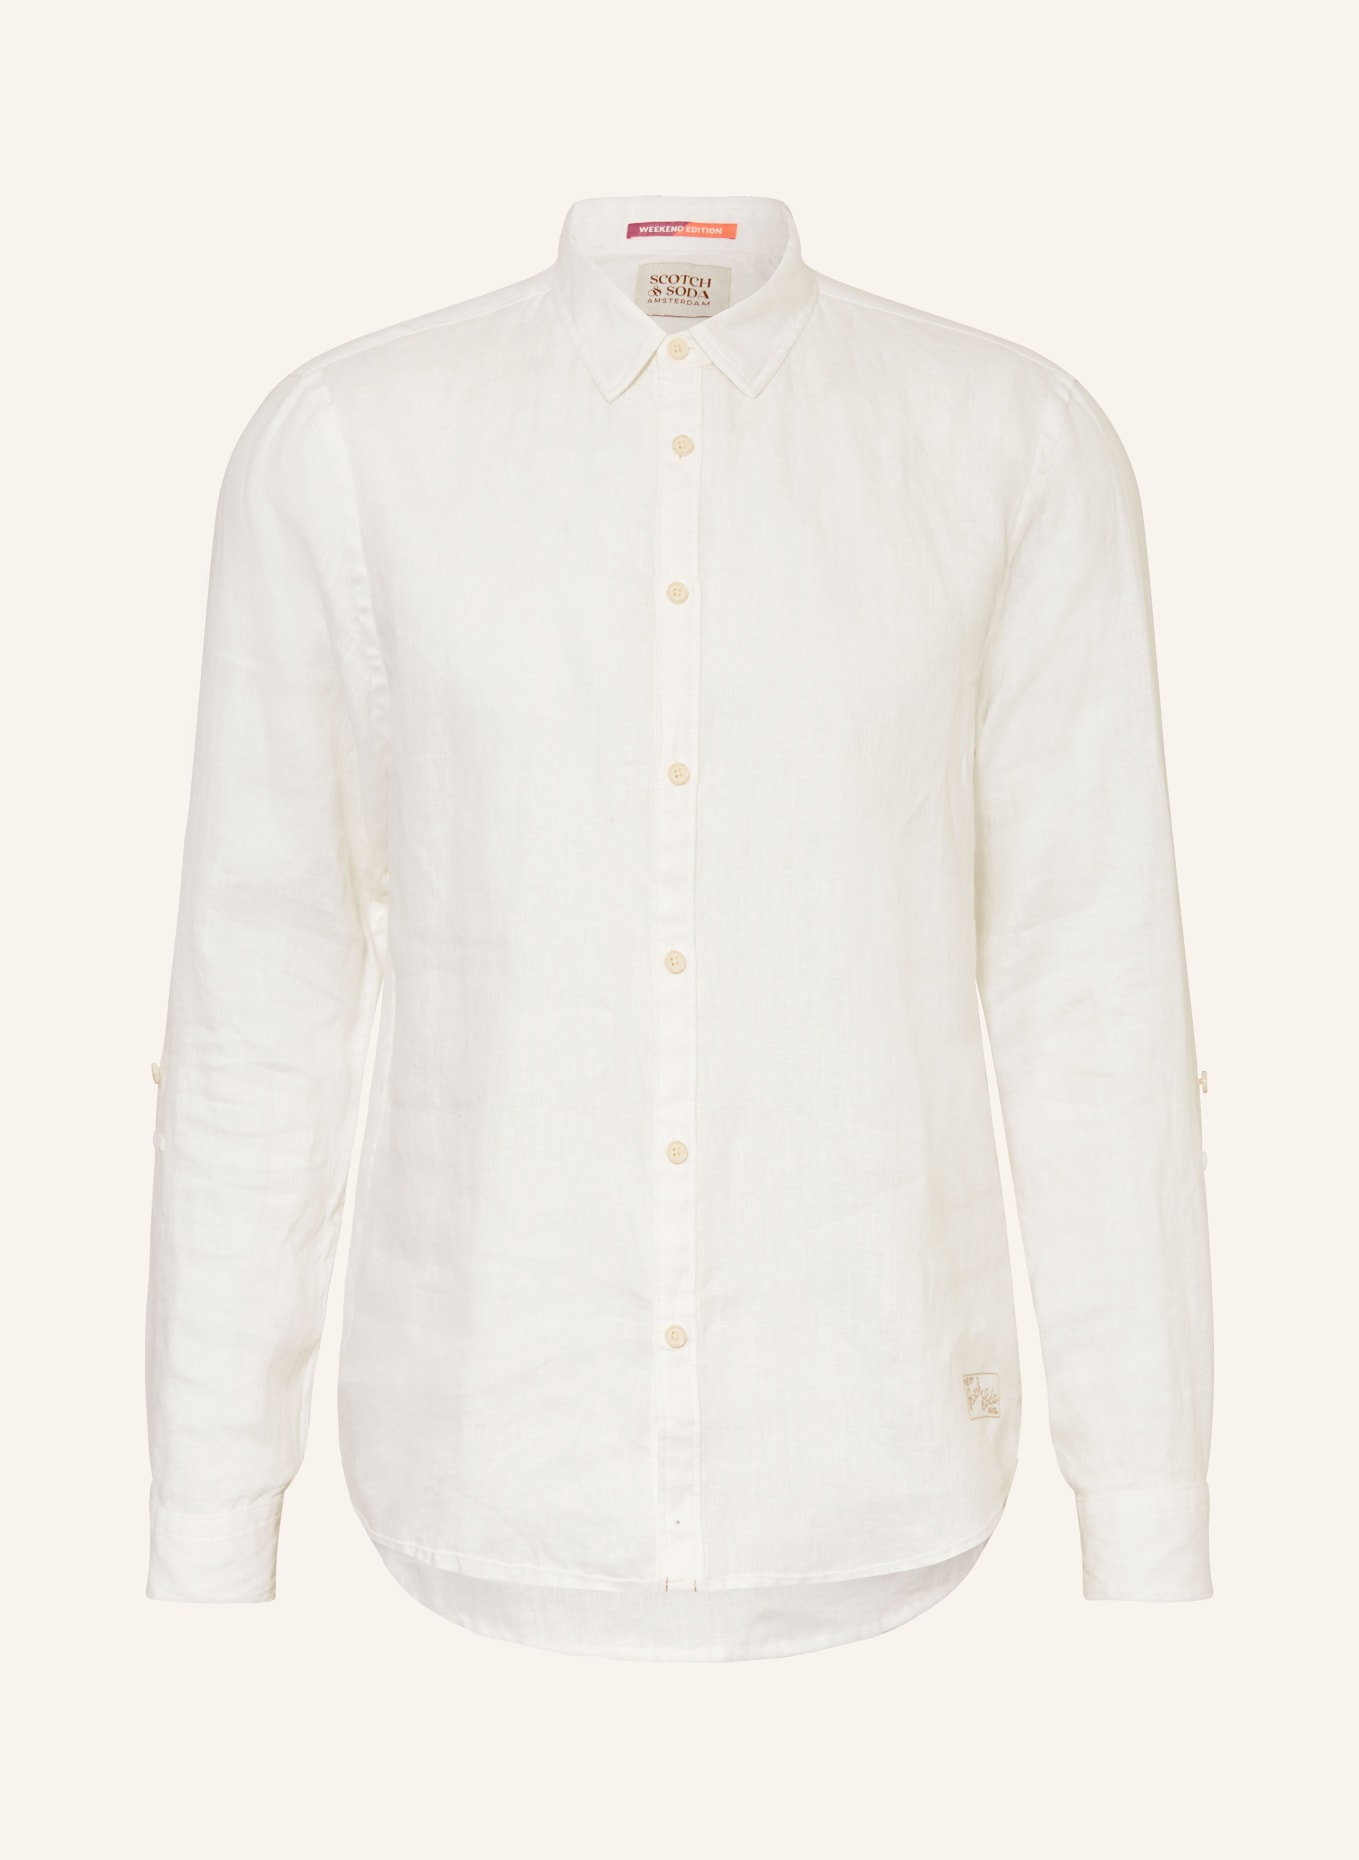 SCOTCH & SODA Linen shirt comfort fit, Color: WHITE (Image 1)